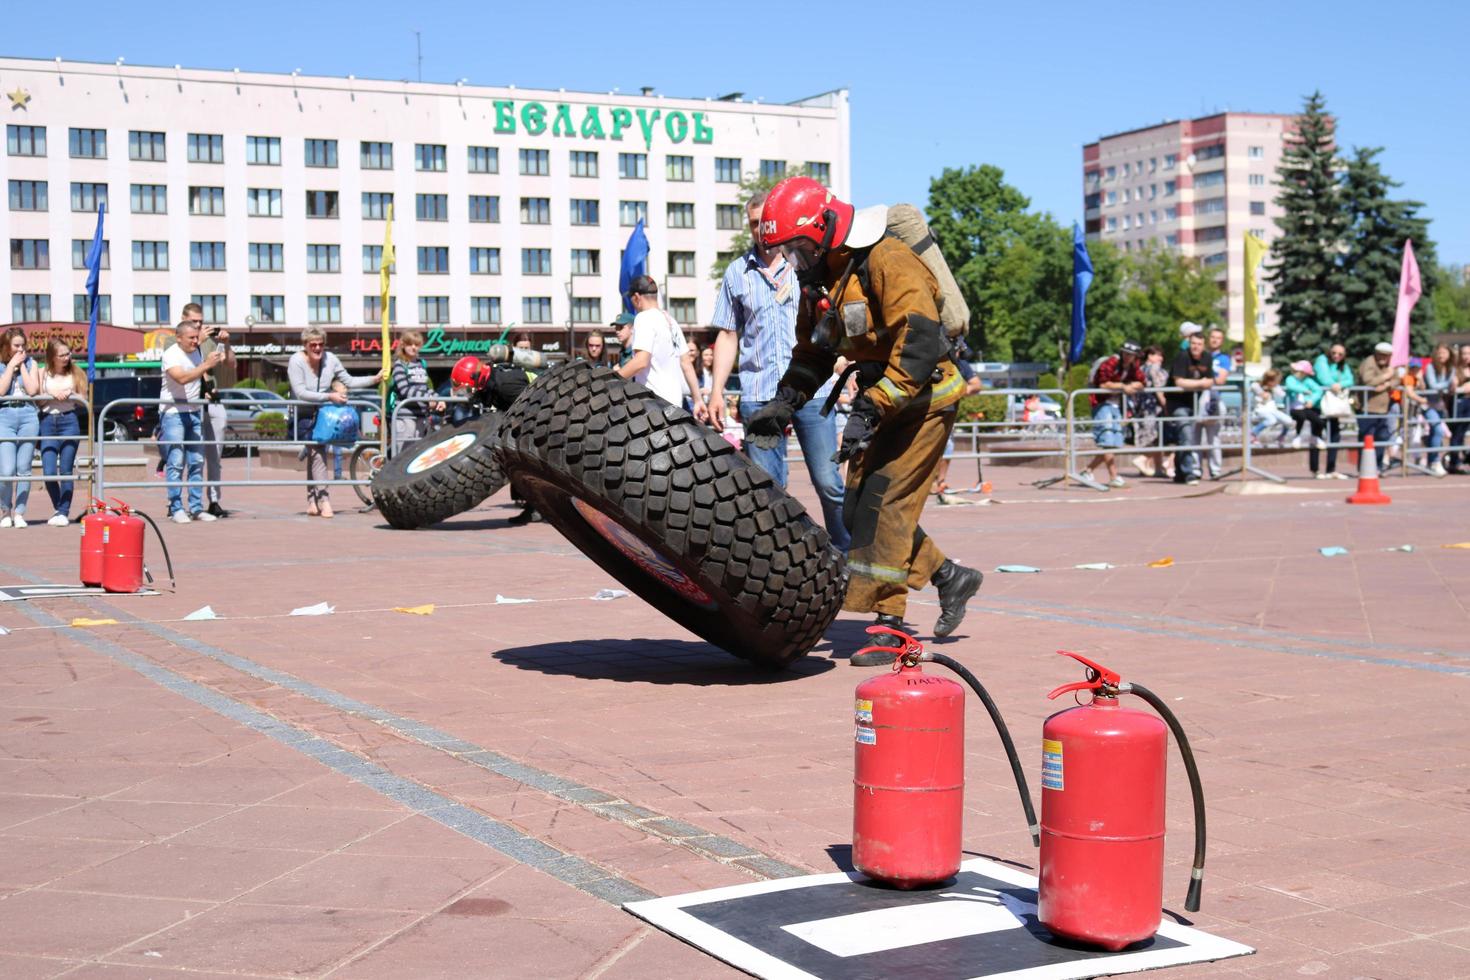 un bombero con traje ignífugo y casco corre y gira una gran rueda de goma en una competencia de extinción de incendios, bielorrusia, minsk, 08.08.2018 foto